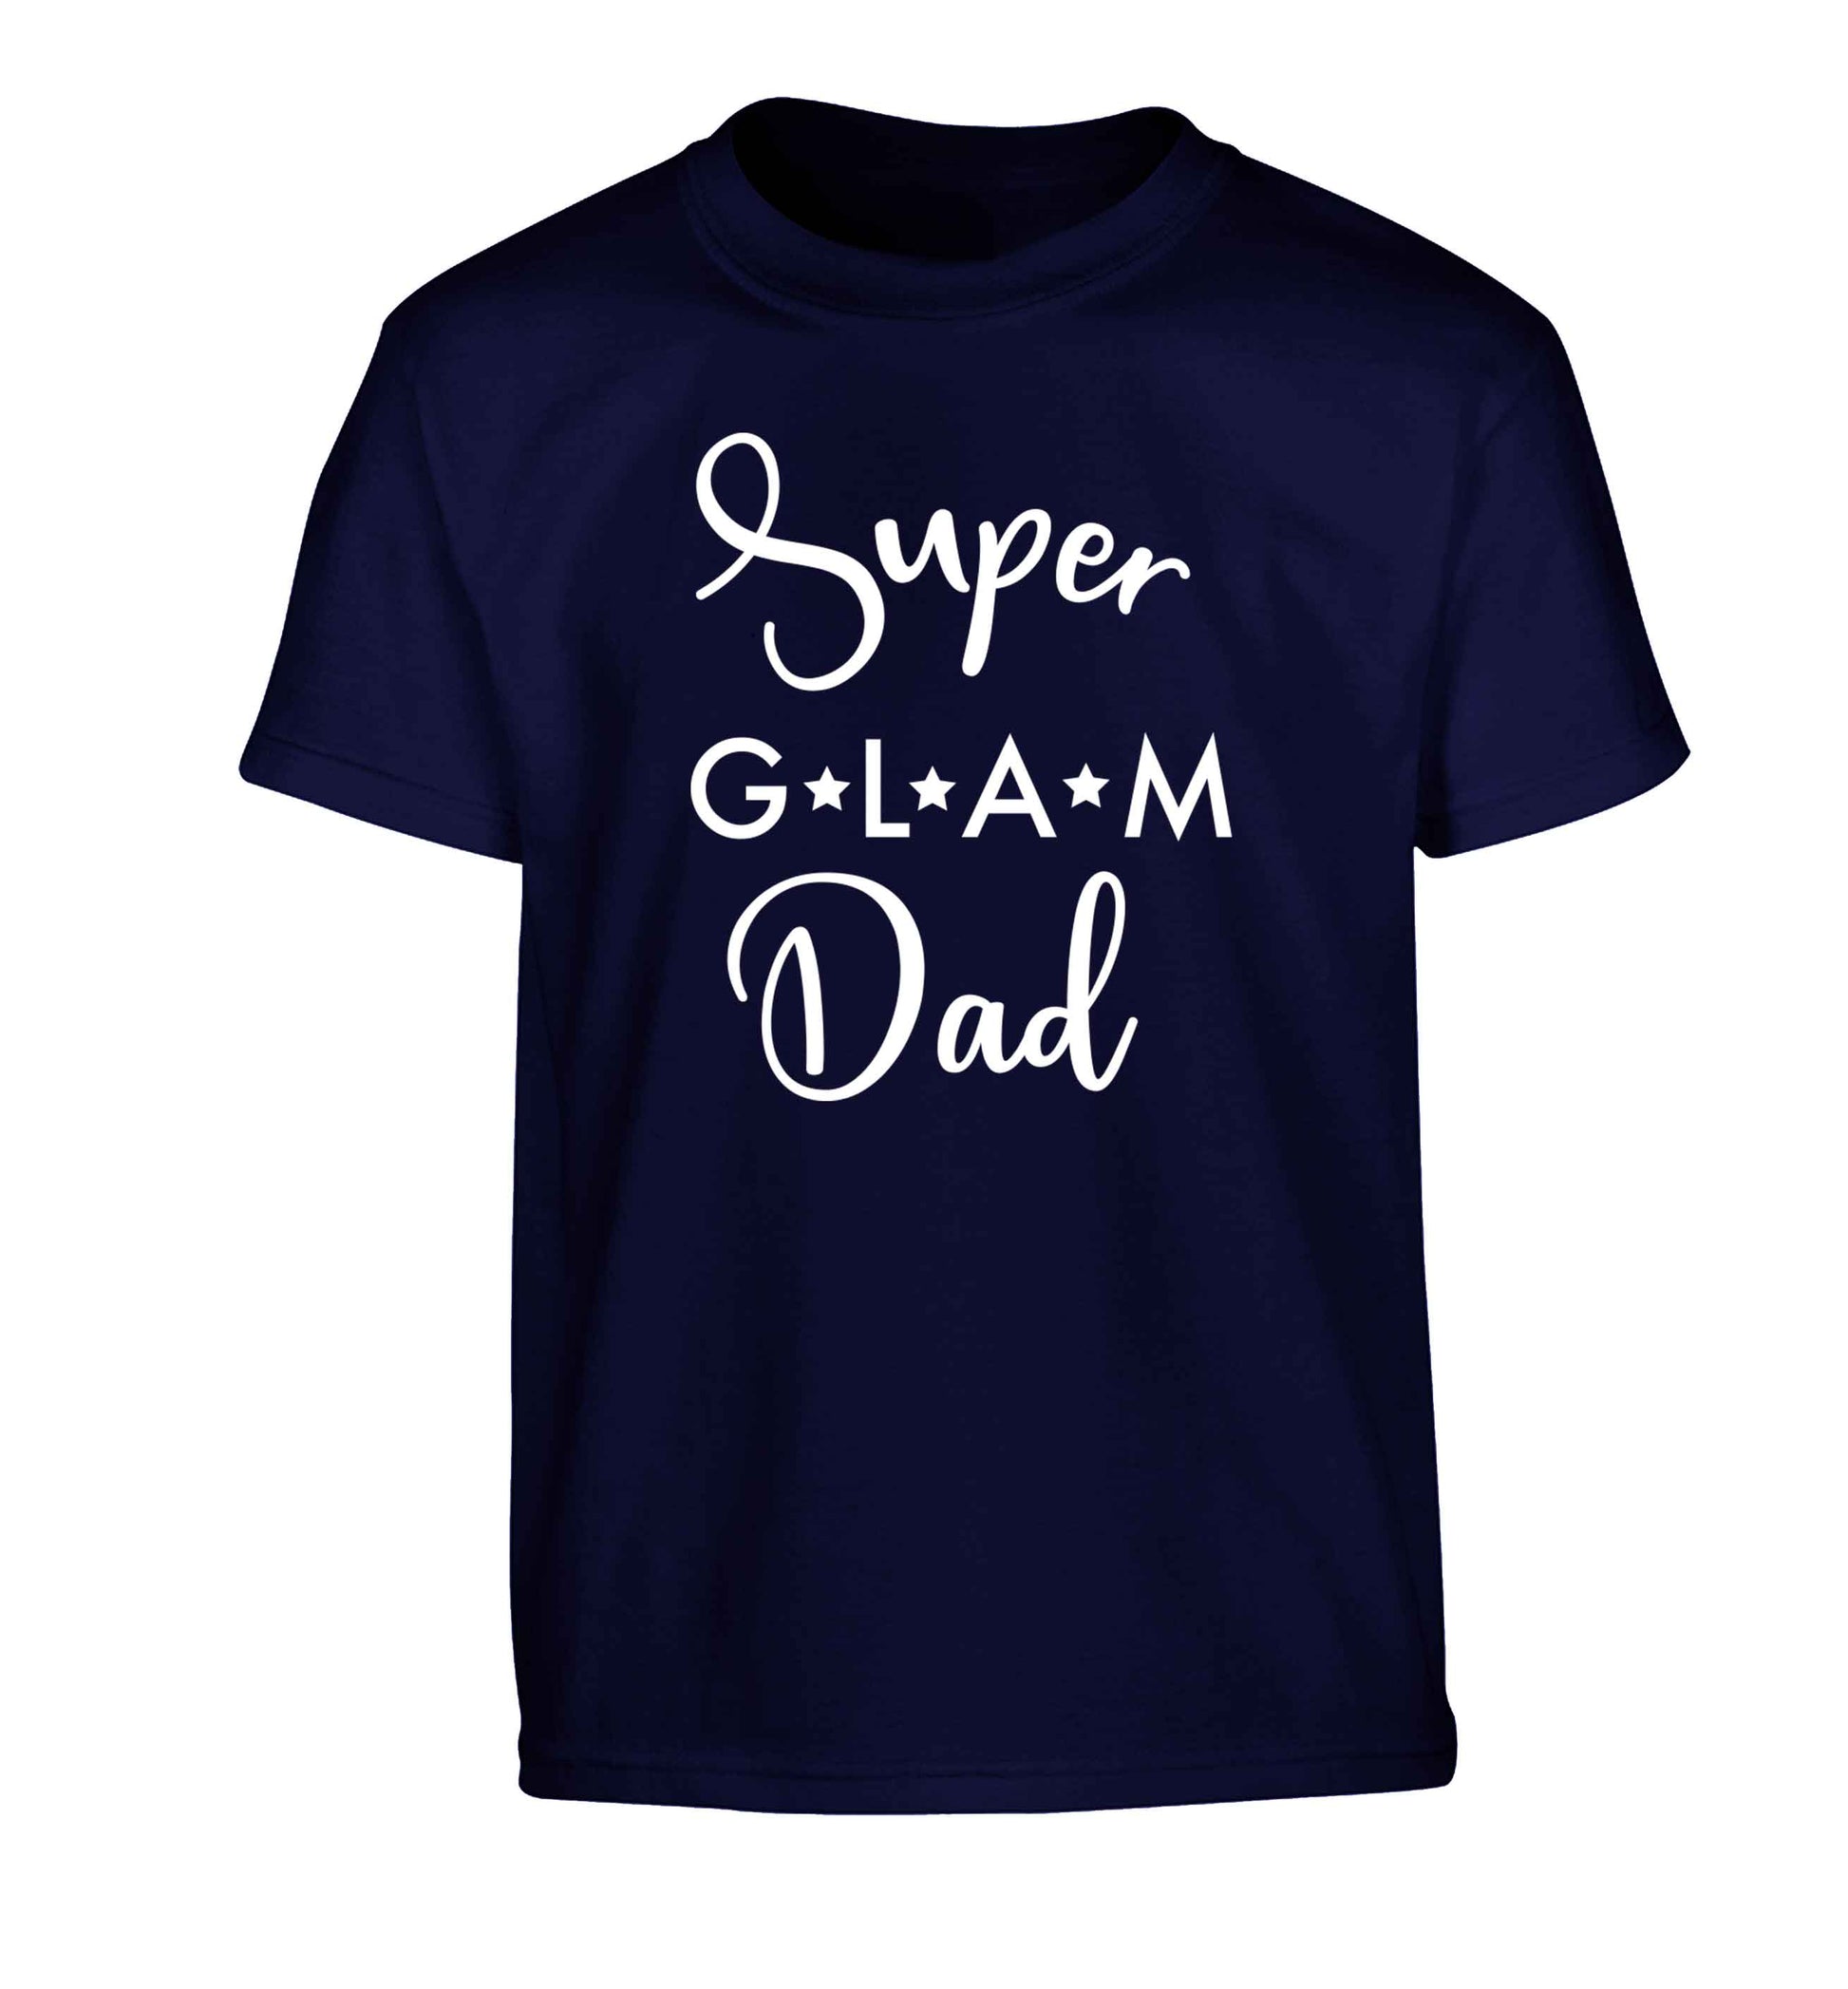 Super glam Dad Children's navy Tshirt 12-13 Years